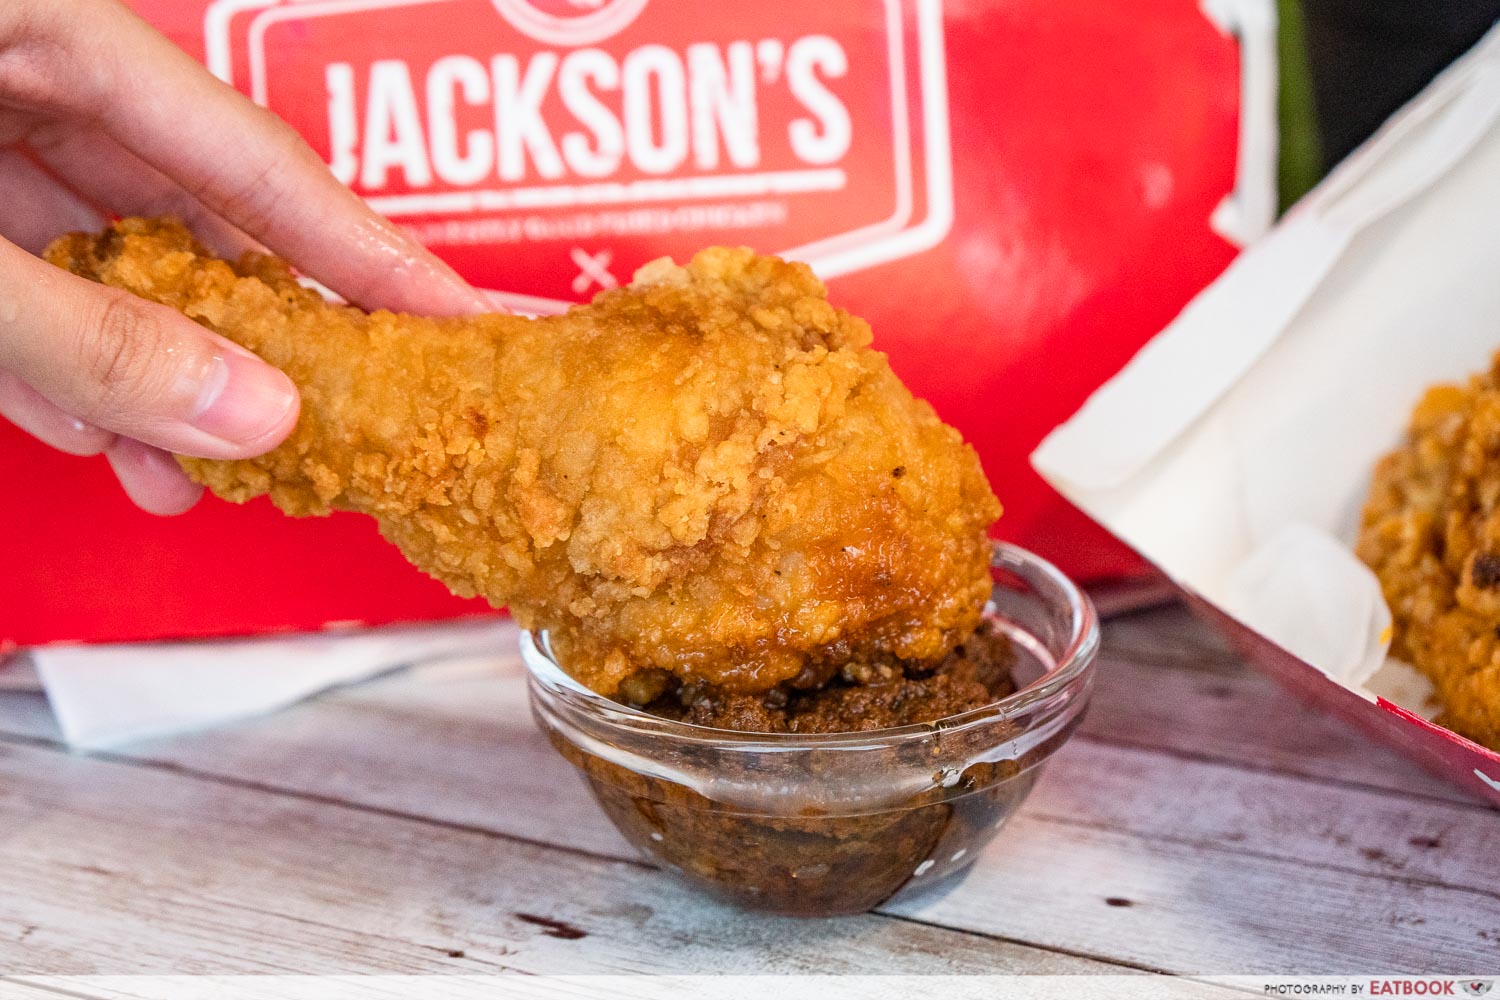 jackson's fried chicken - drumstick